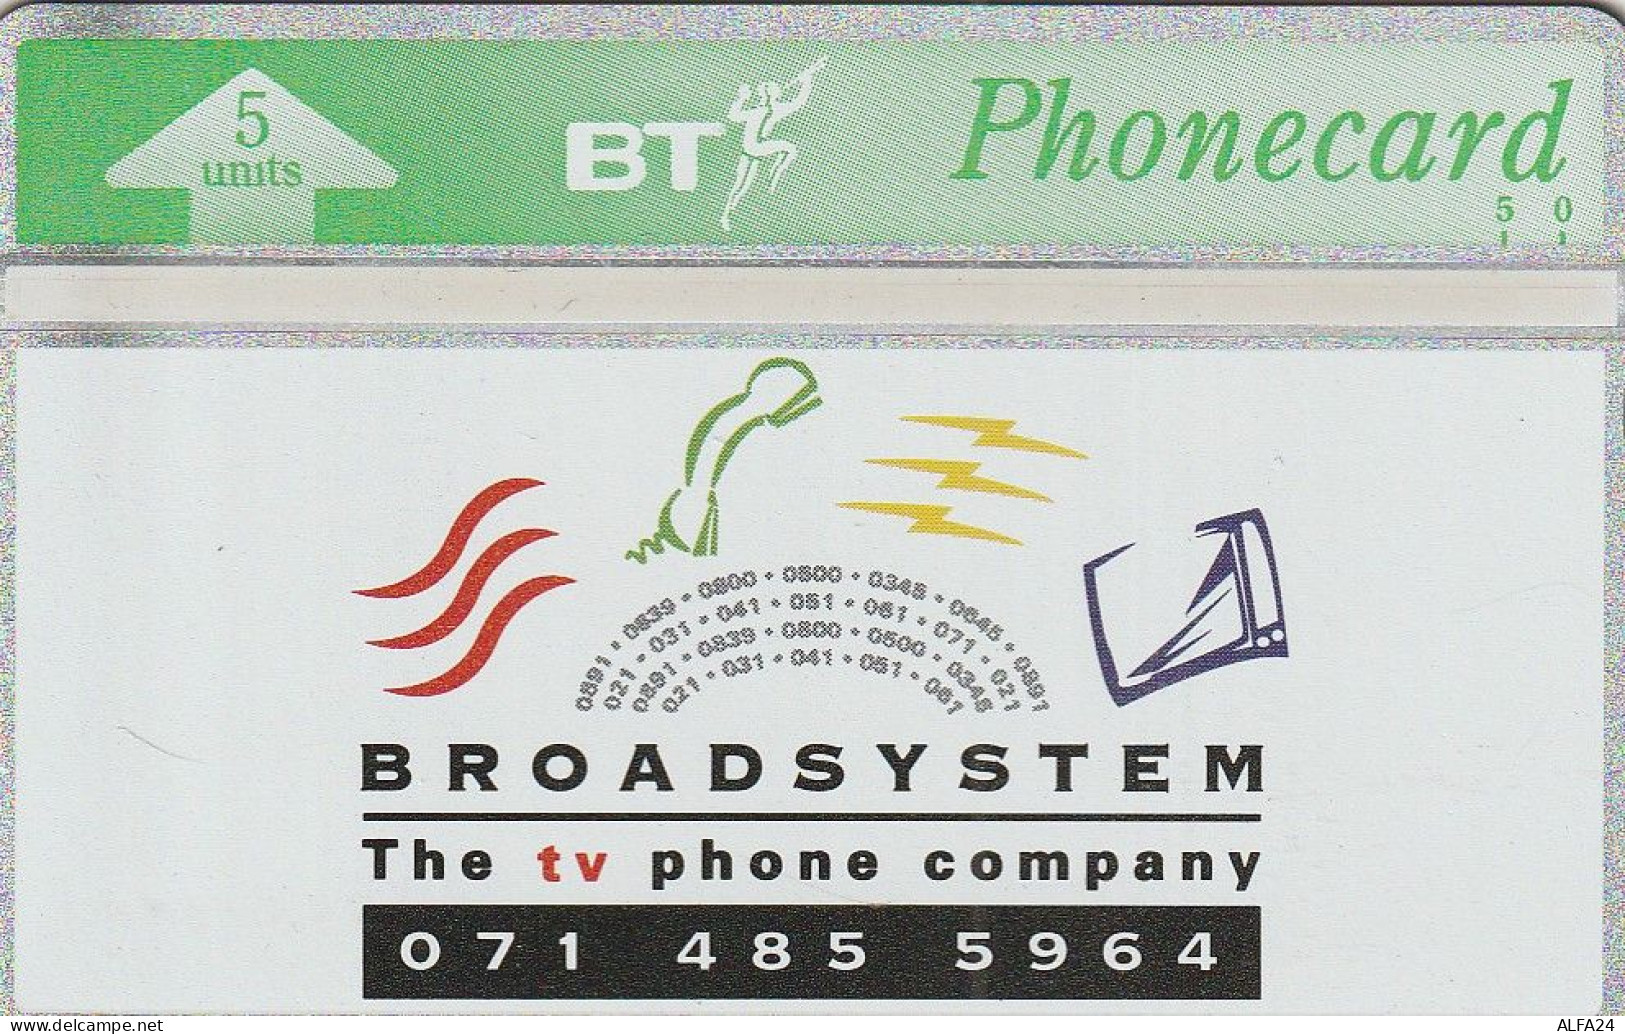 PHONE CARD UK LG (E76.20.2 - BT Private